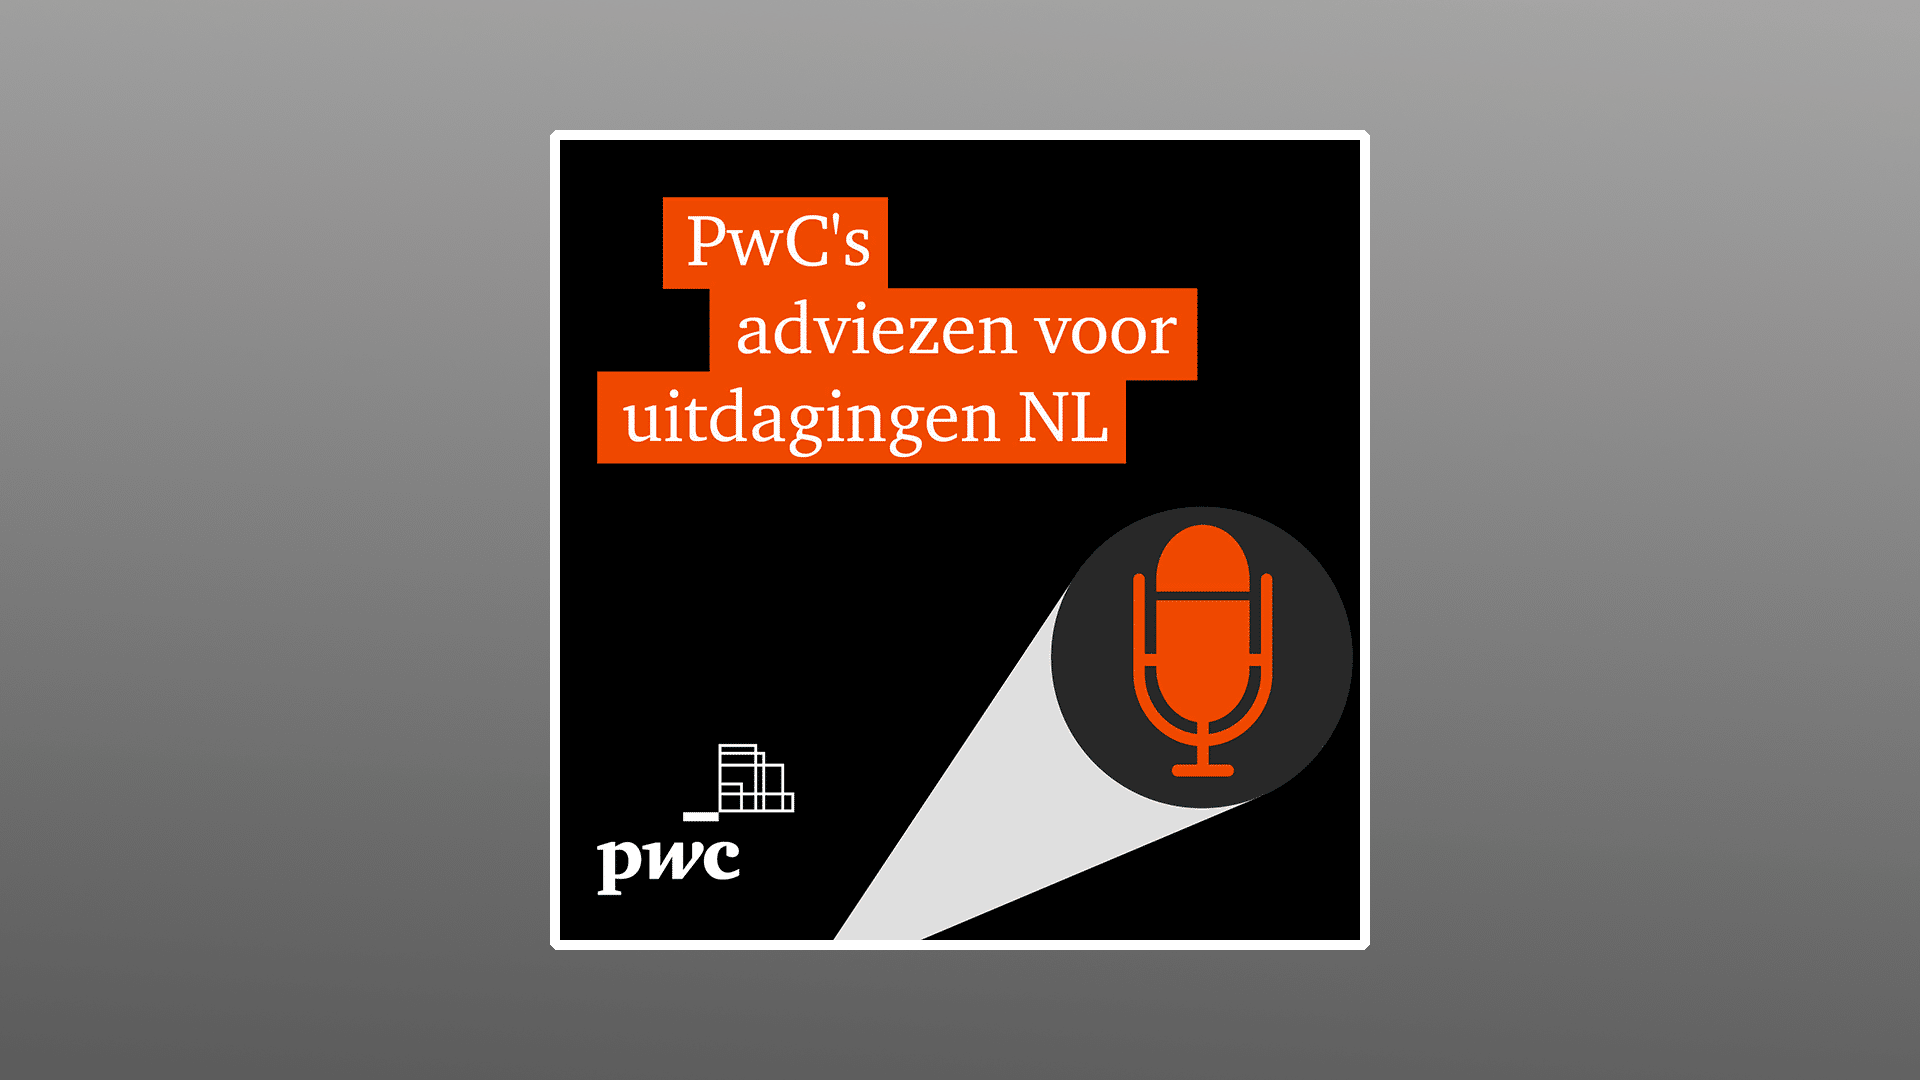 Portfolio | PwC's adviezen voor de grootste uitdagingen van Nederland